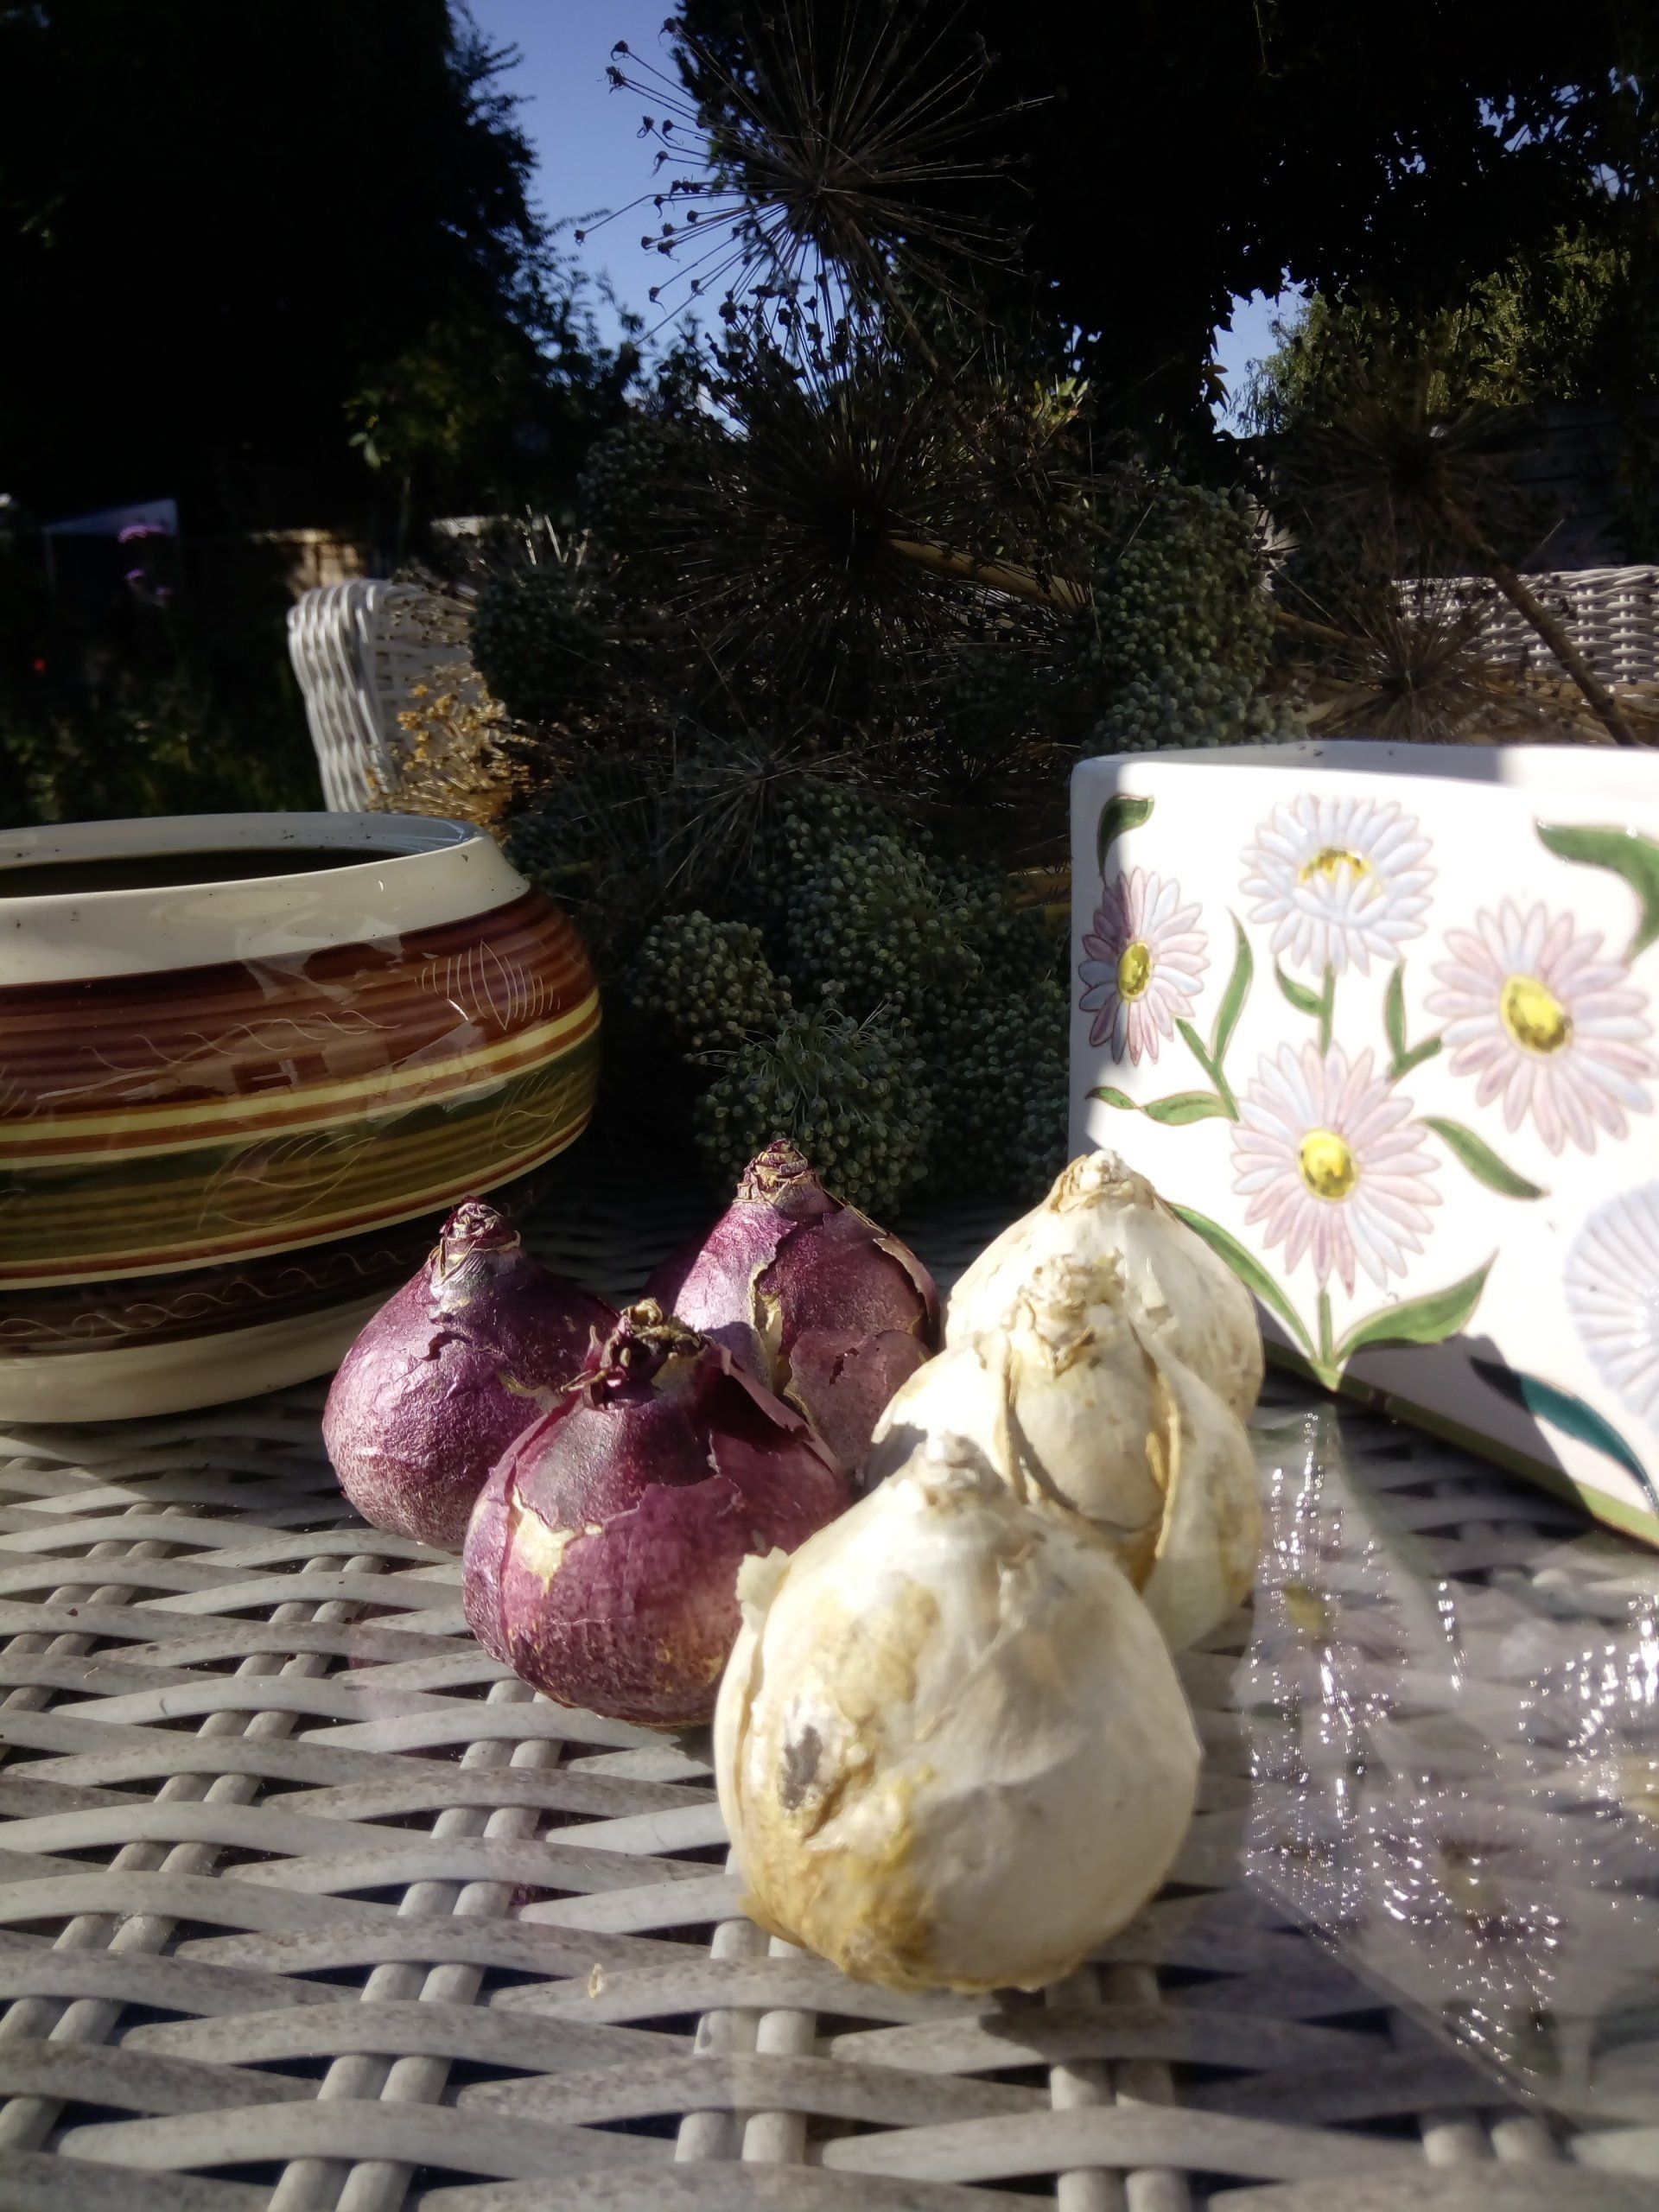 Woodstock and Pearl White Hyacinth Bulbs